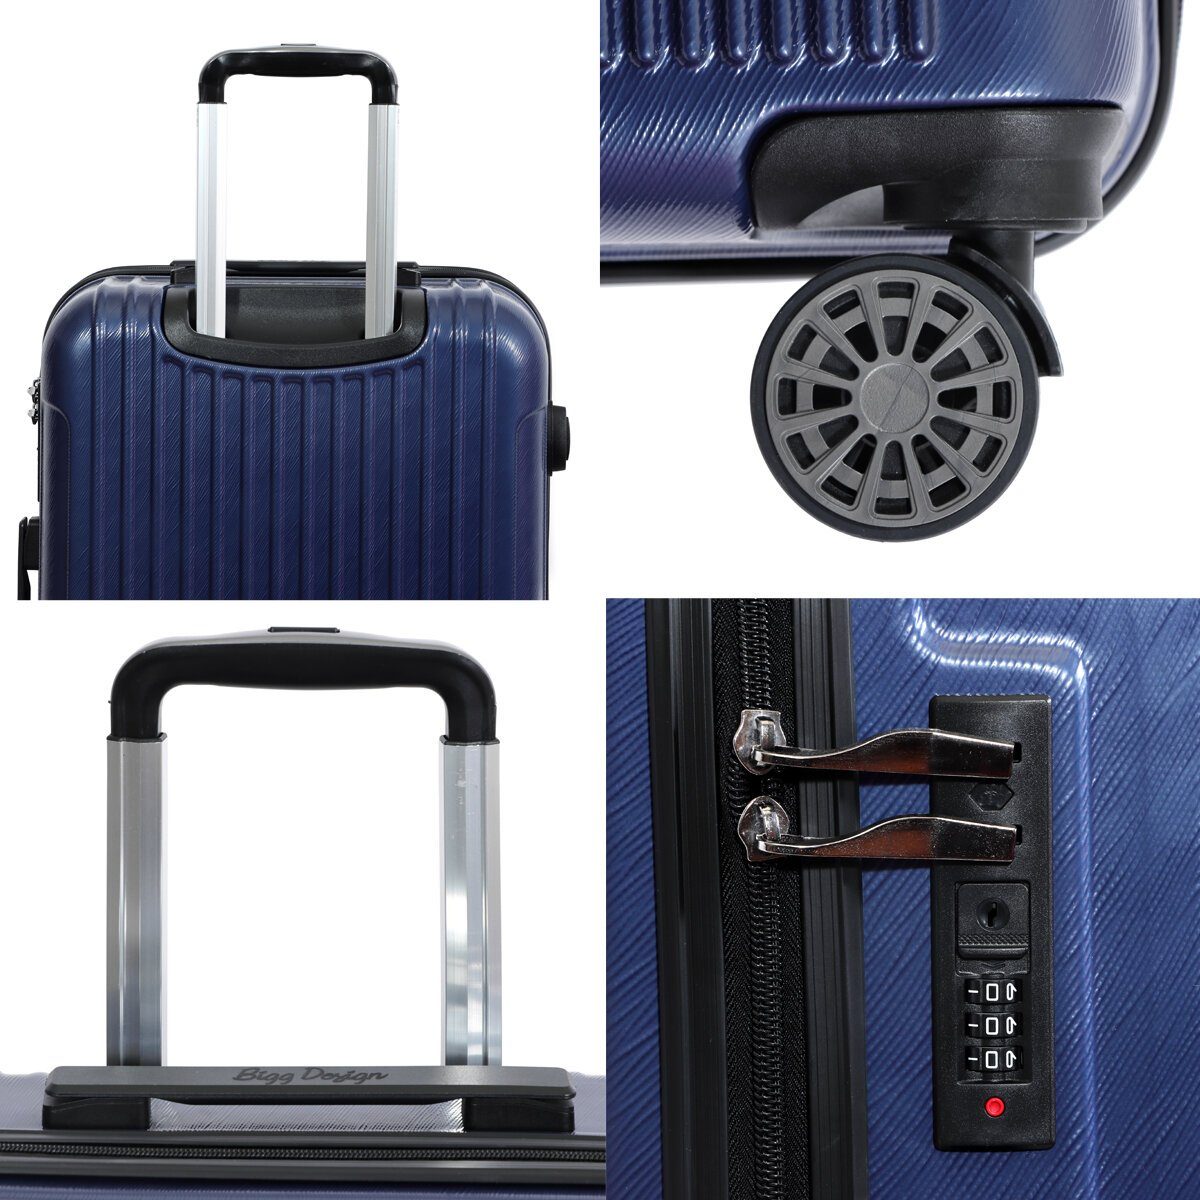 Koffer Biggdesign Koffer Hartschale Blau BIGGDESIGN 3 Ocean Kofferset Set teilig